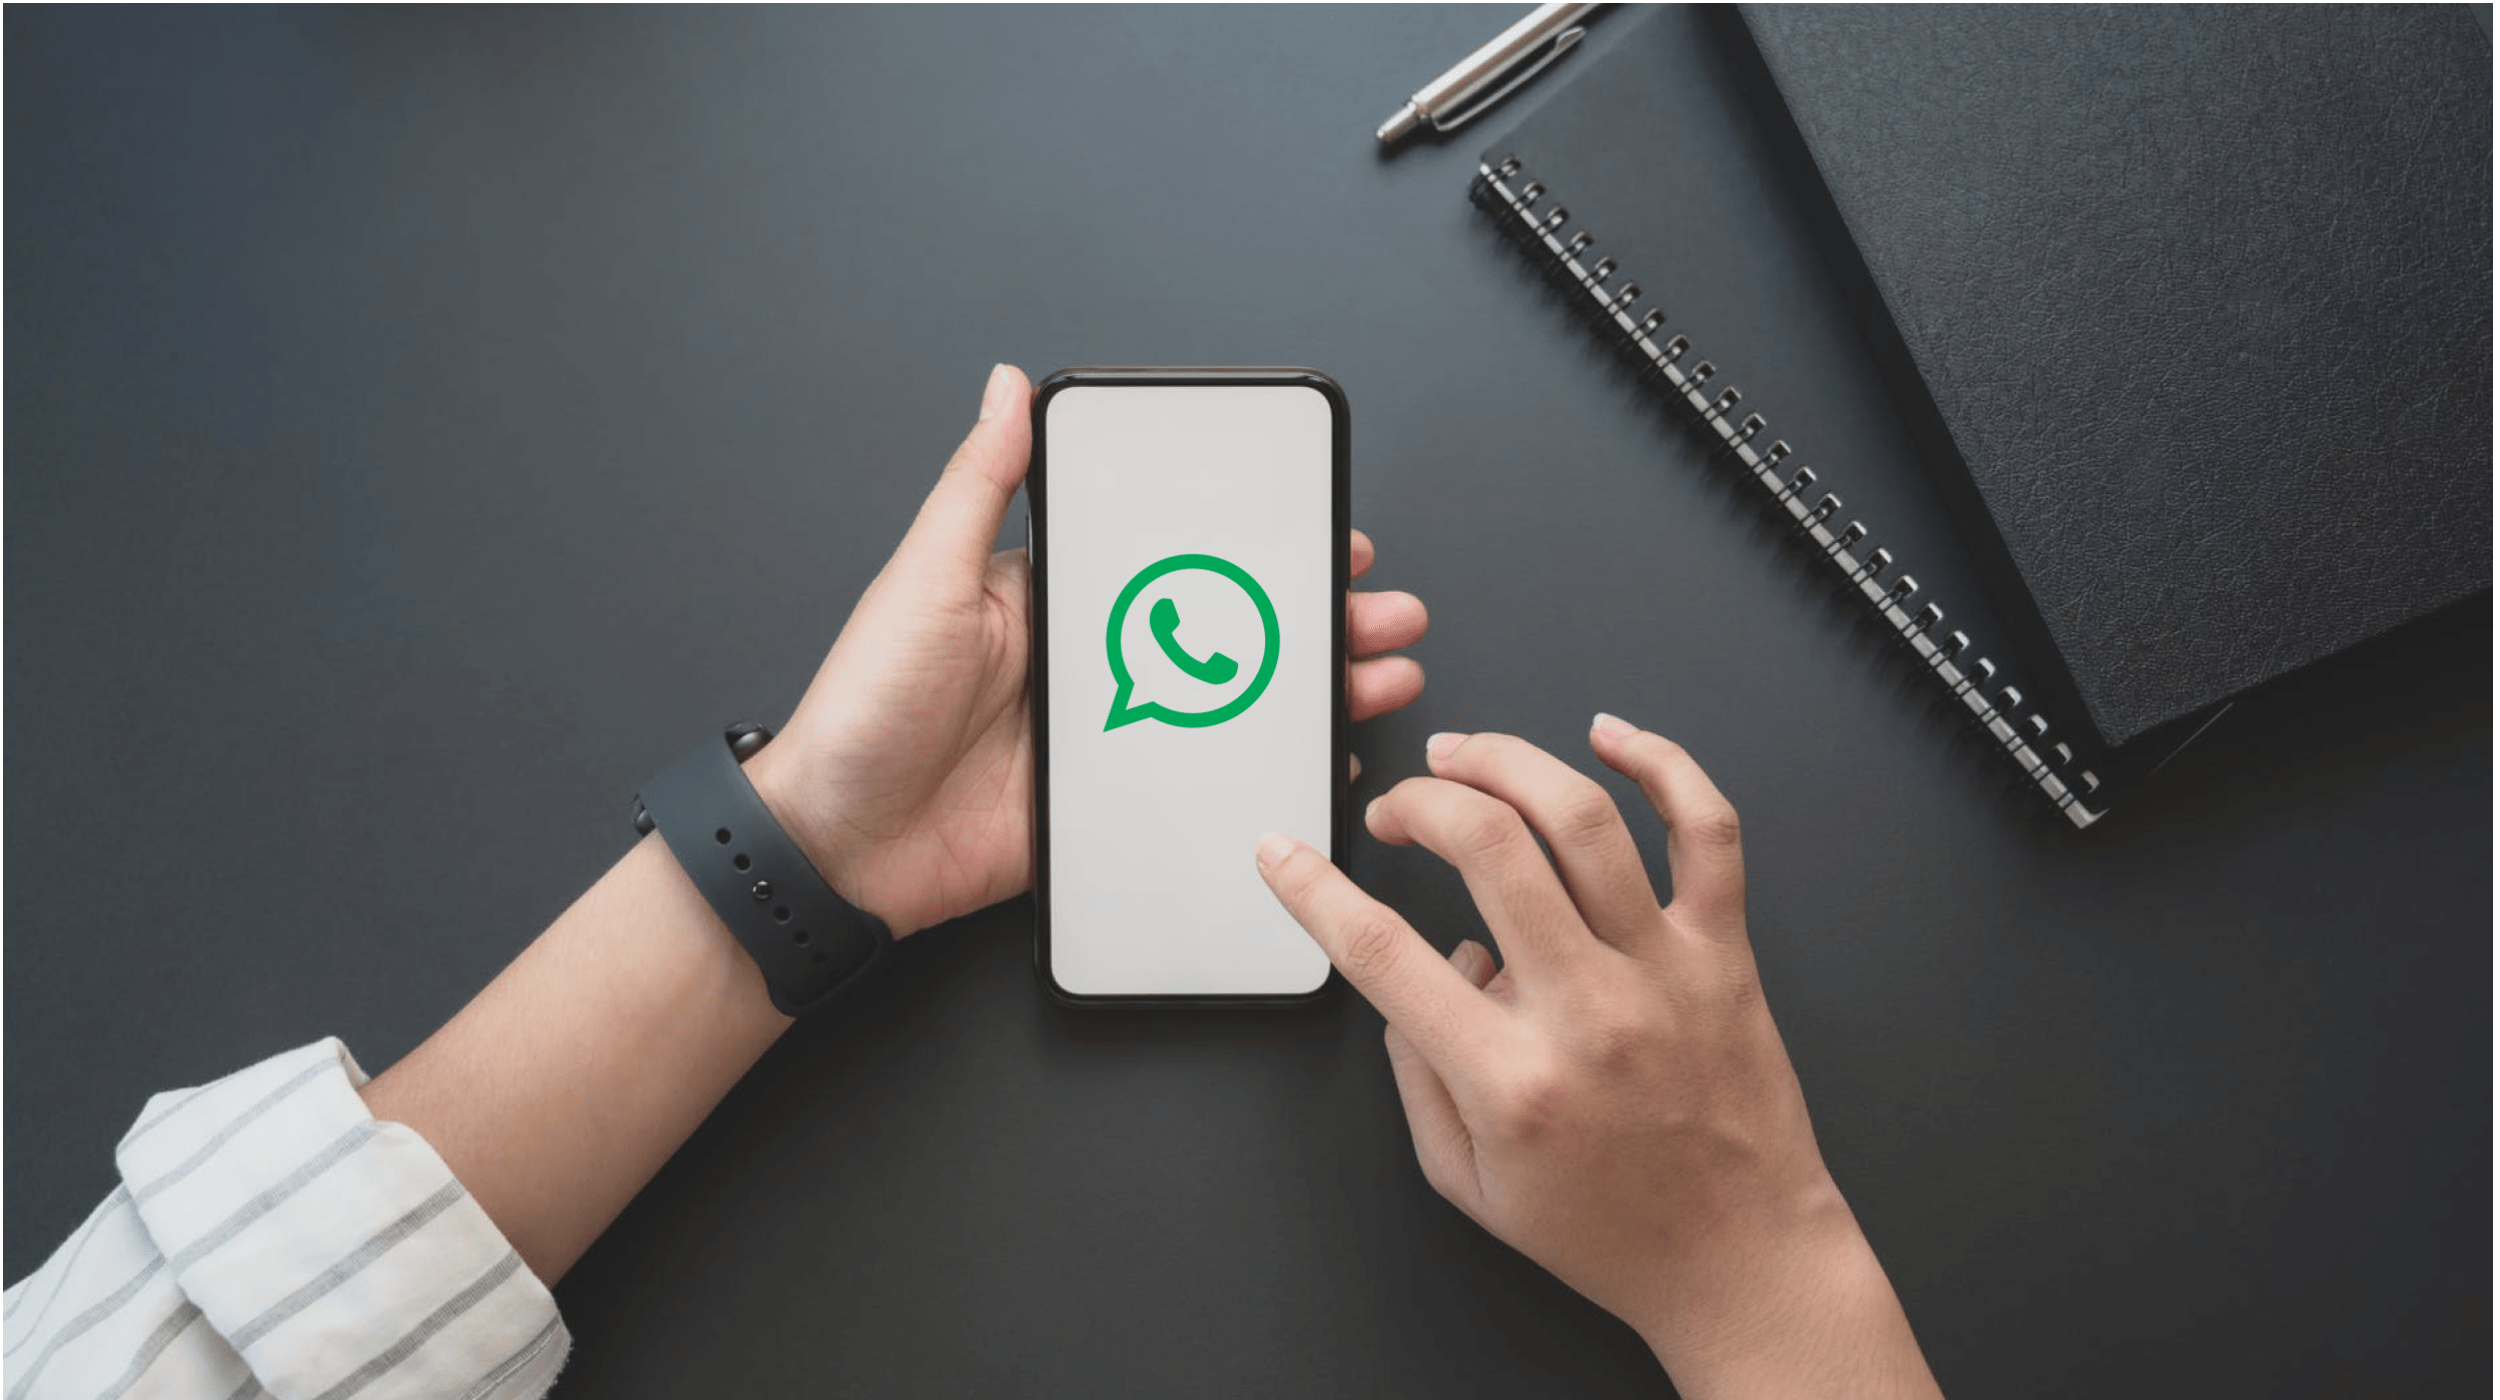 Atendimento no WhatsApp: dicas para criar oportunidades com chatbot